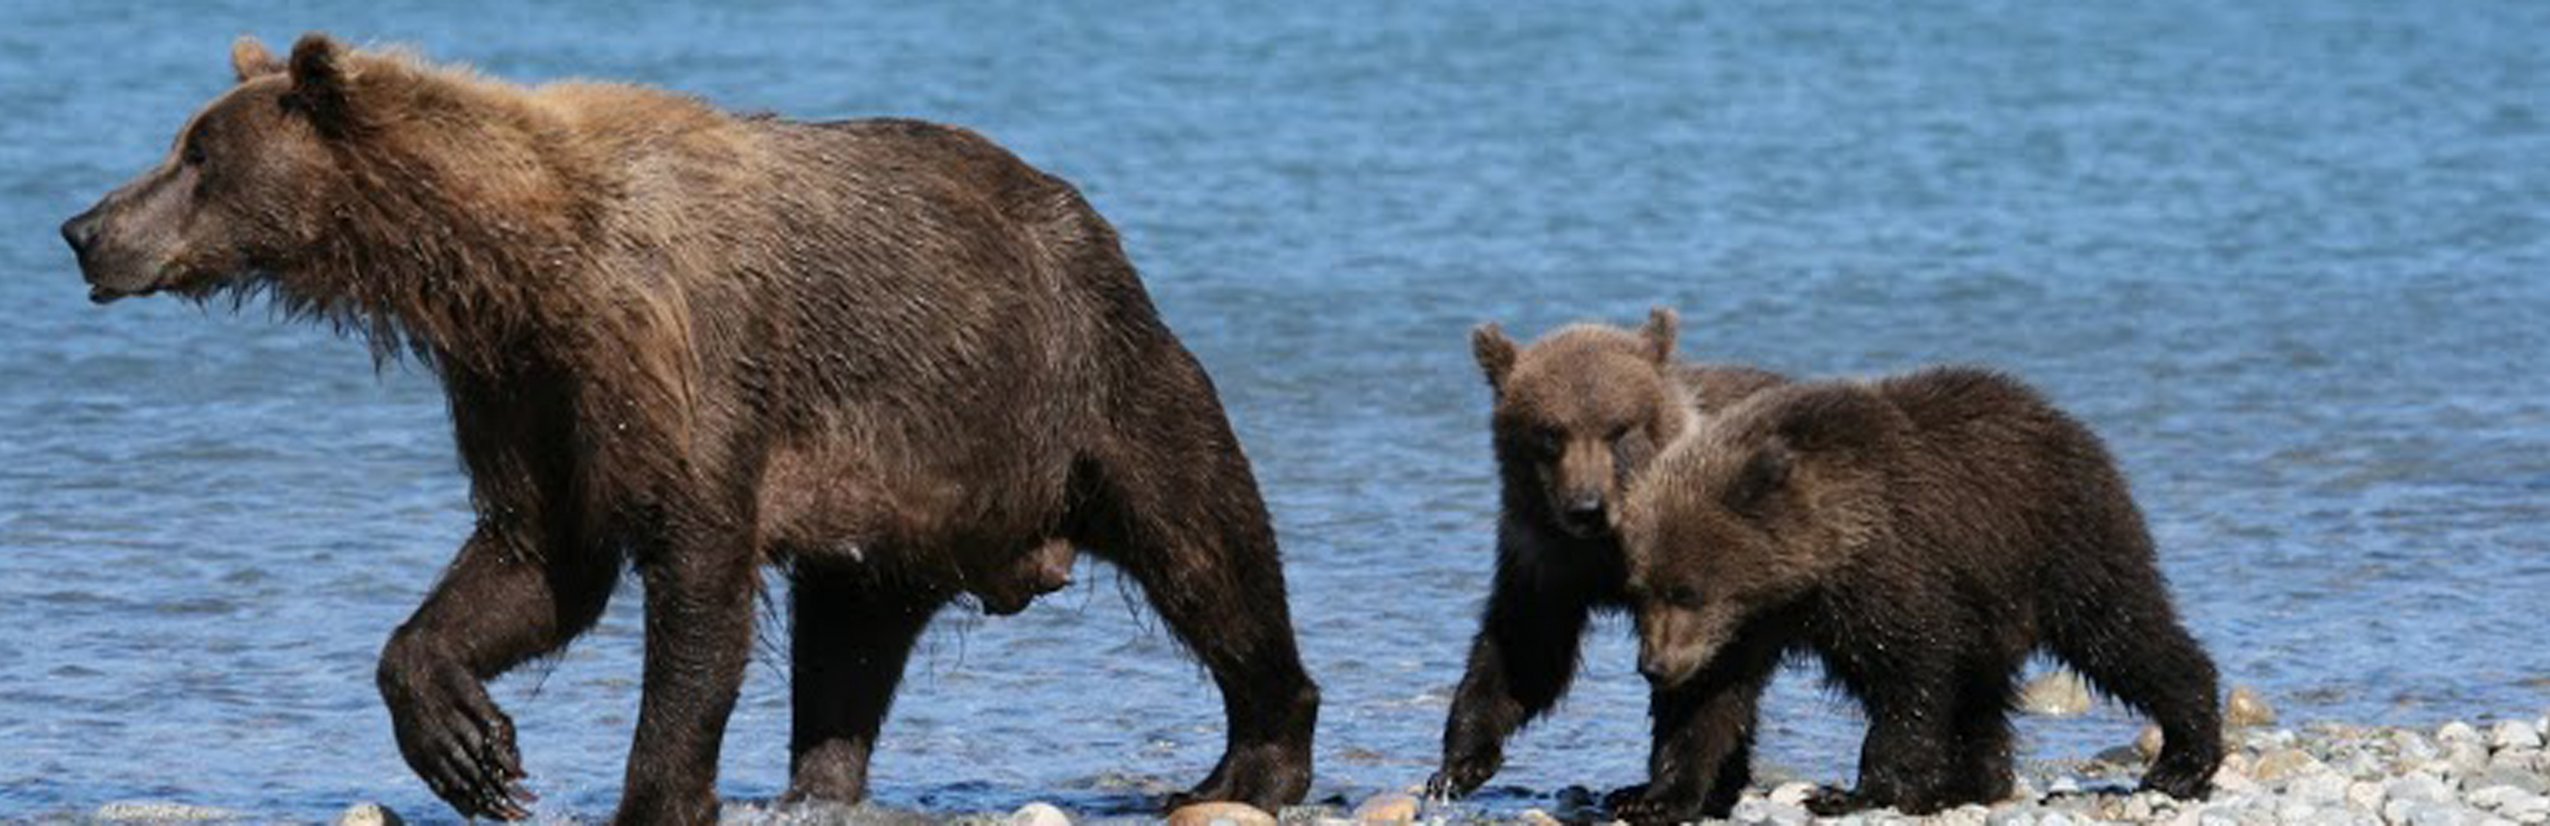 Vorstellung neuer Familienreisen - Kanada - Bären